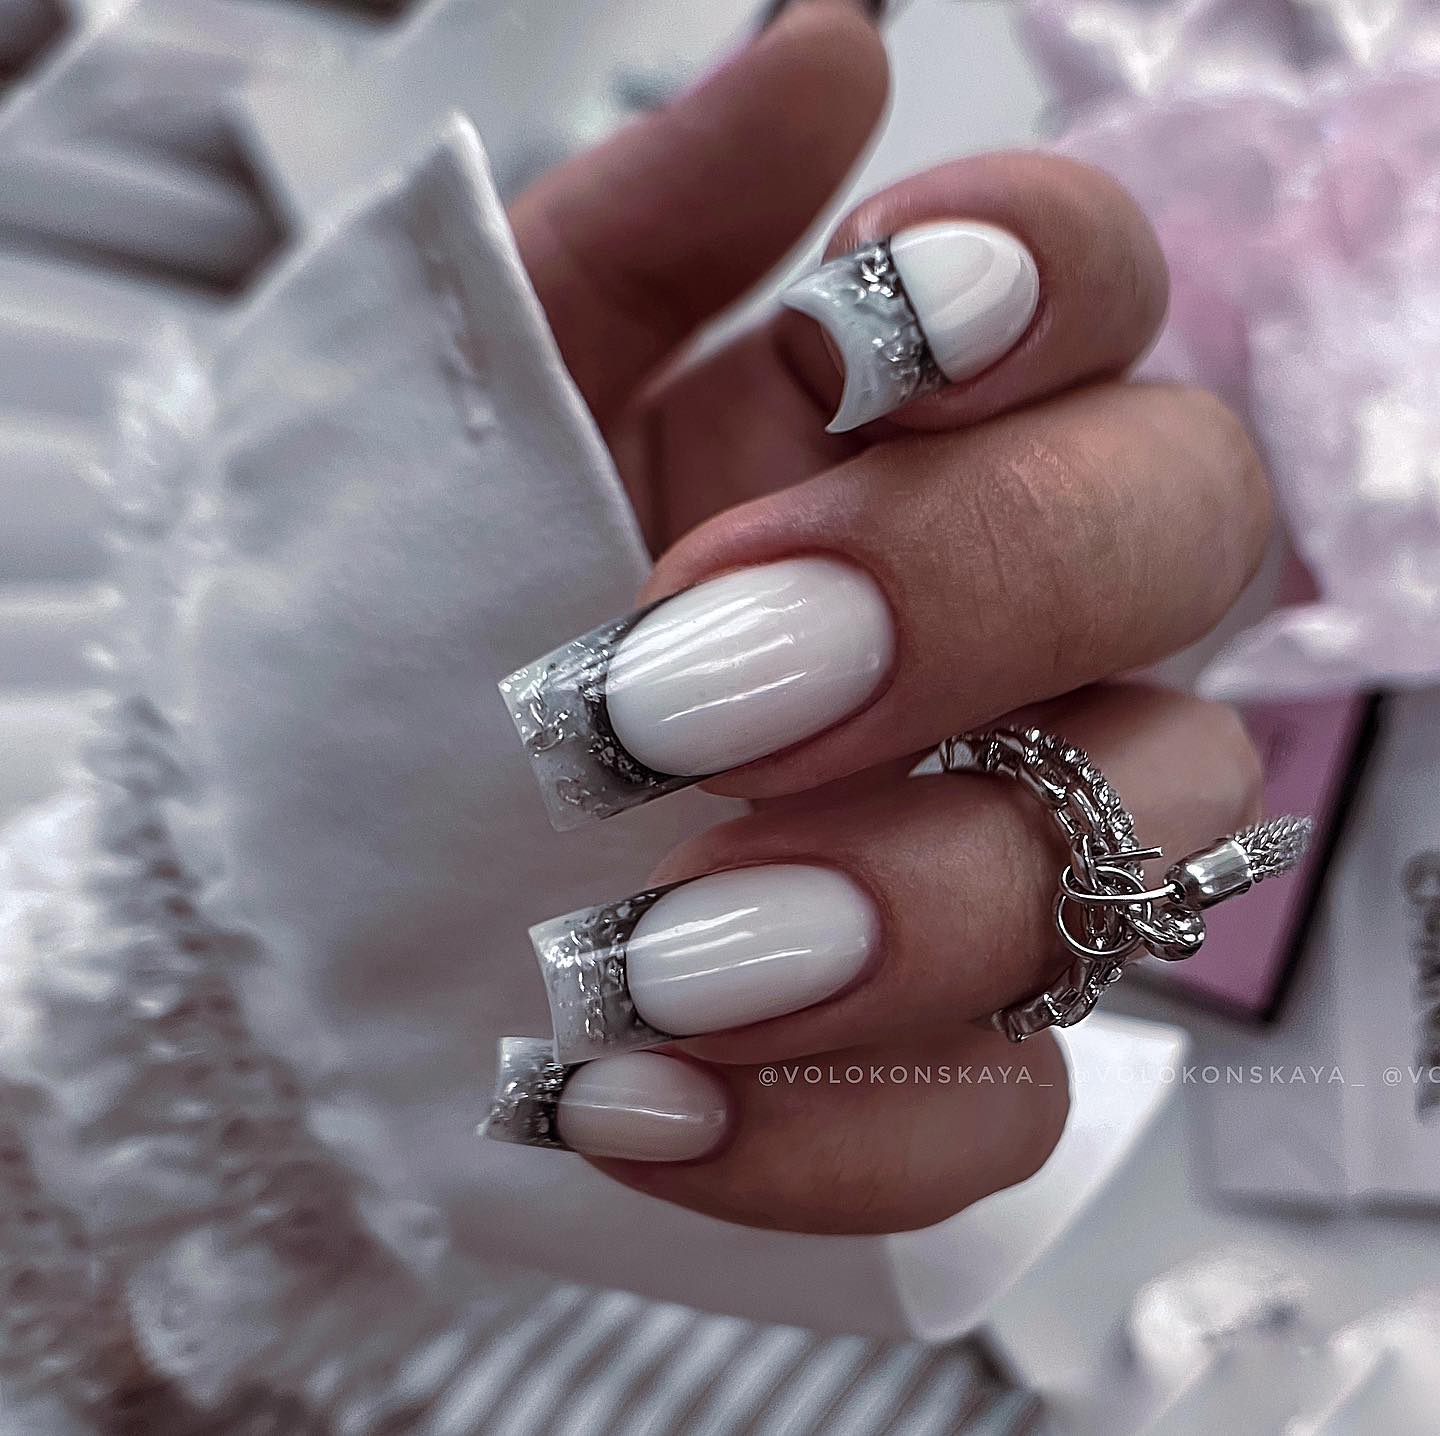 Schwarz-weiße Gothic-Nägel